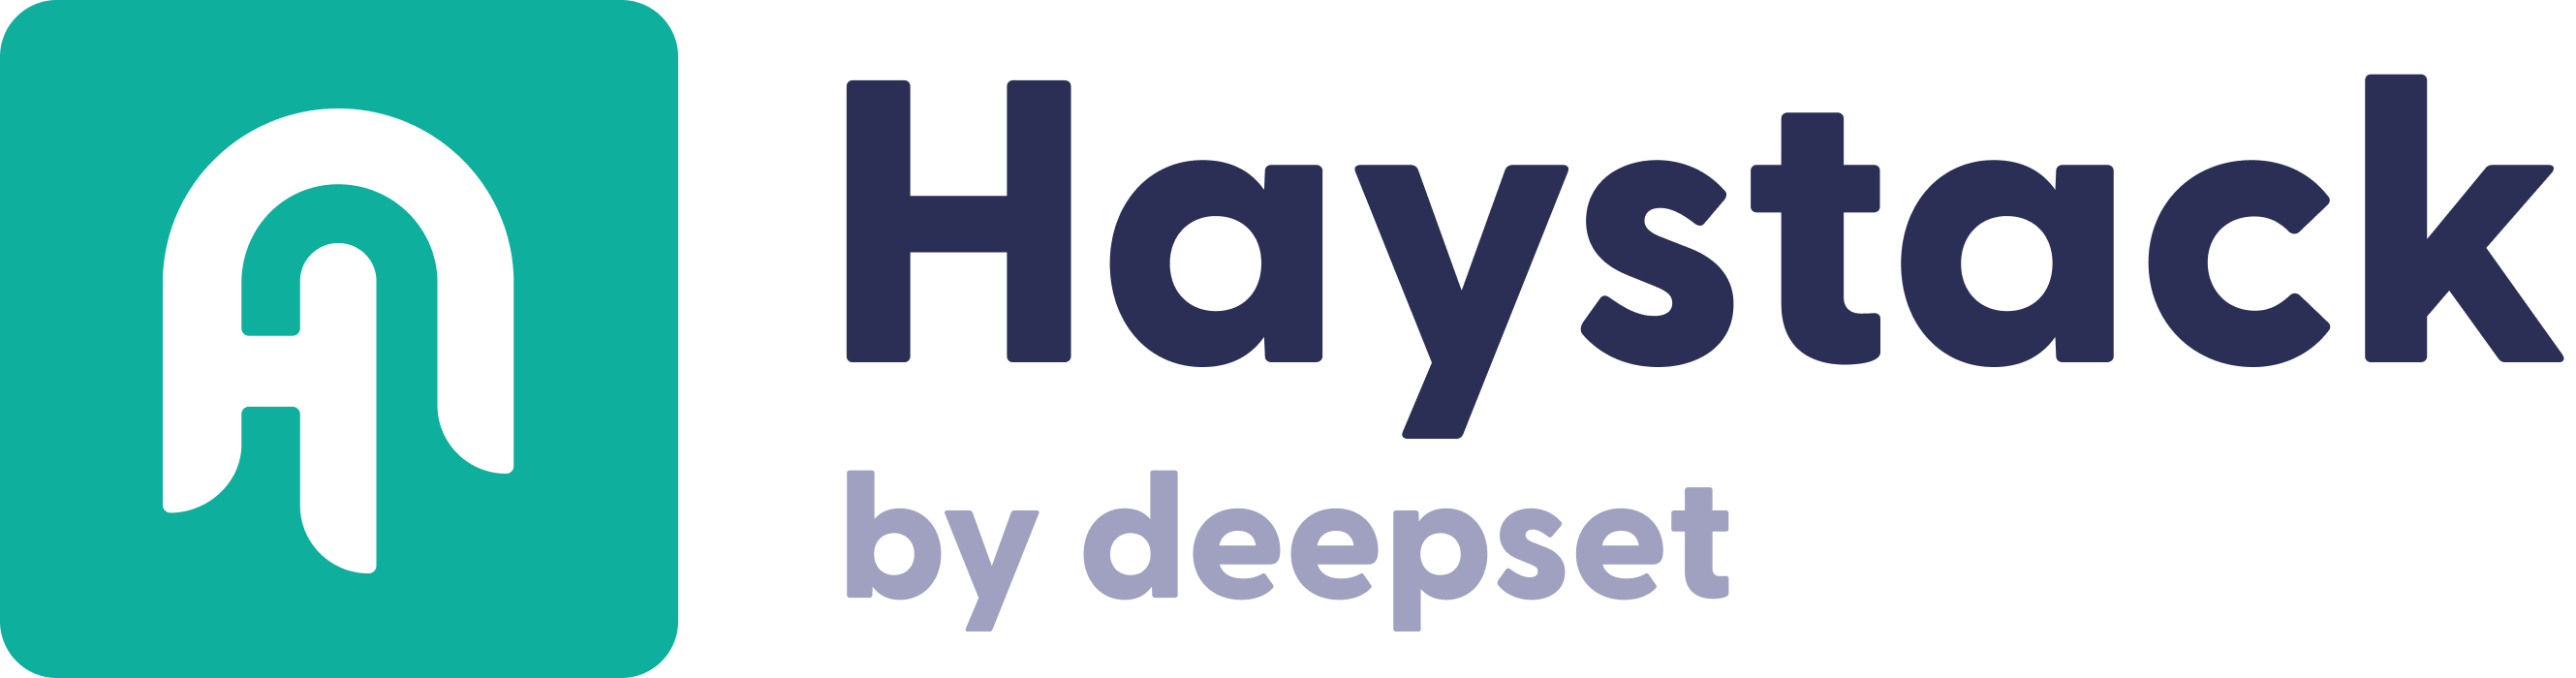 Haystack by deepset logo